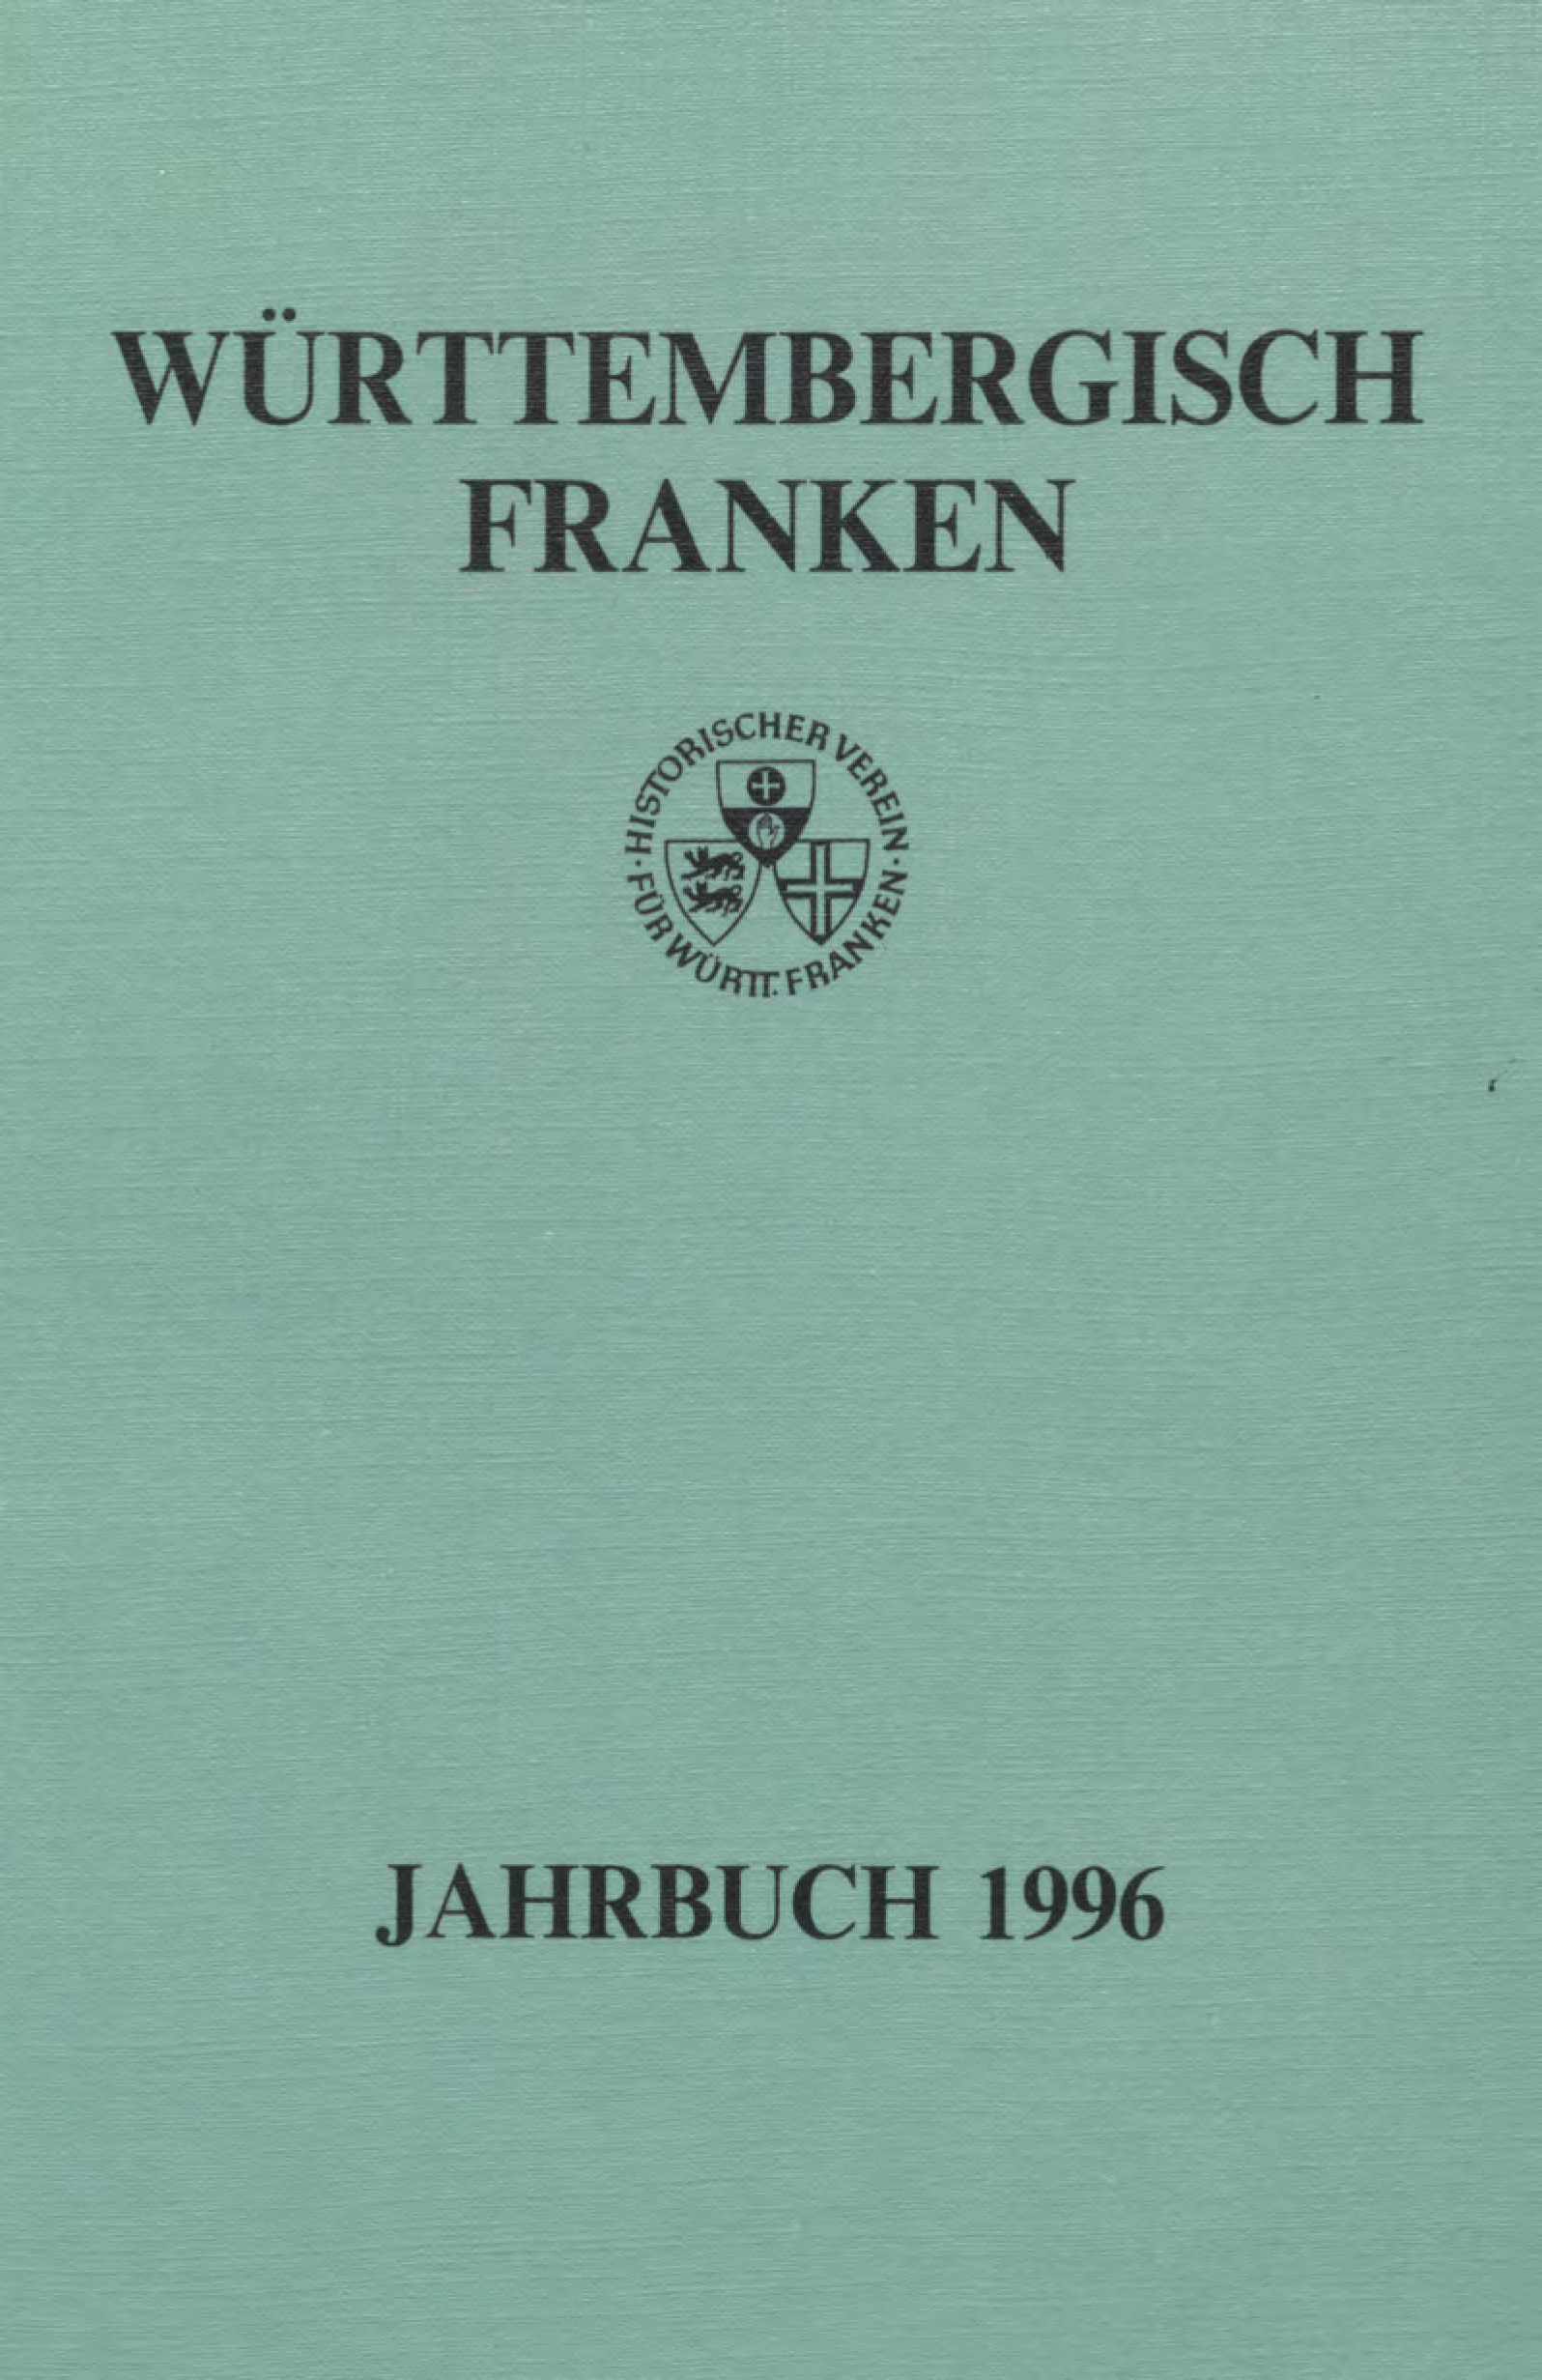                     Ansehen Bd. 80 (1996): Württembergisch Franken
                